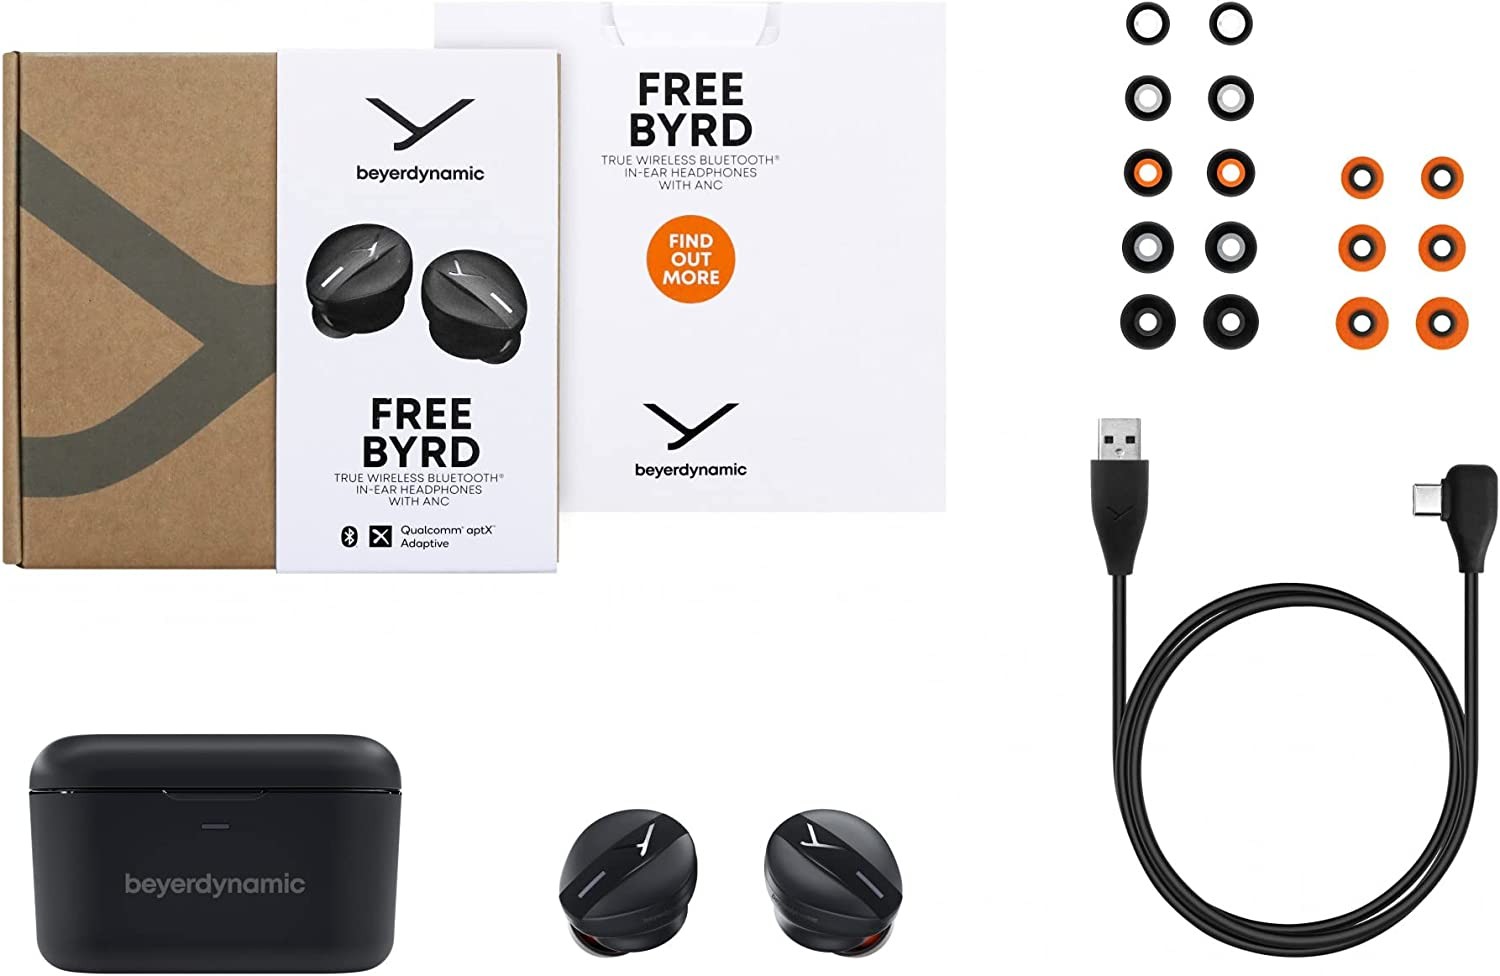 camaras y audio - Beyerdynamic Free Byrd TWS Earbuds con ANC, Transparency, aptX Adaptive, AAC, Qi 2